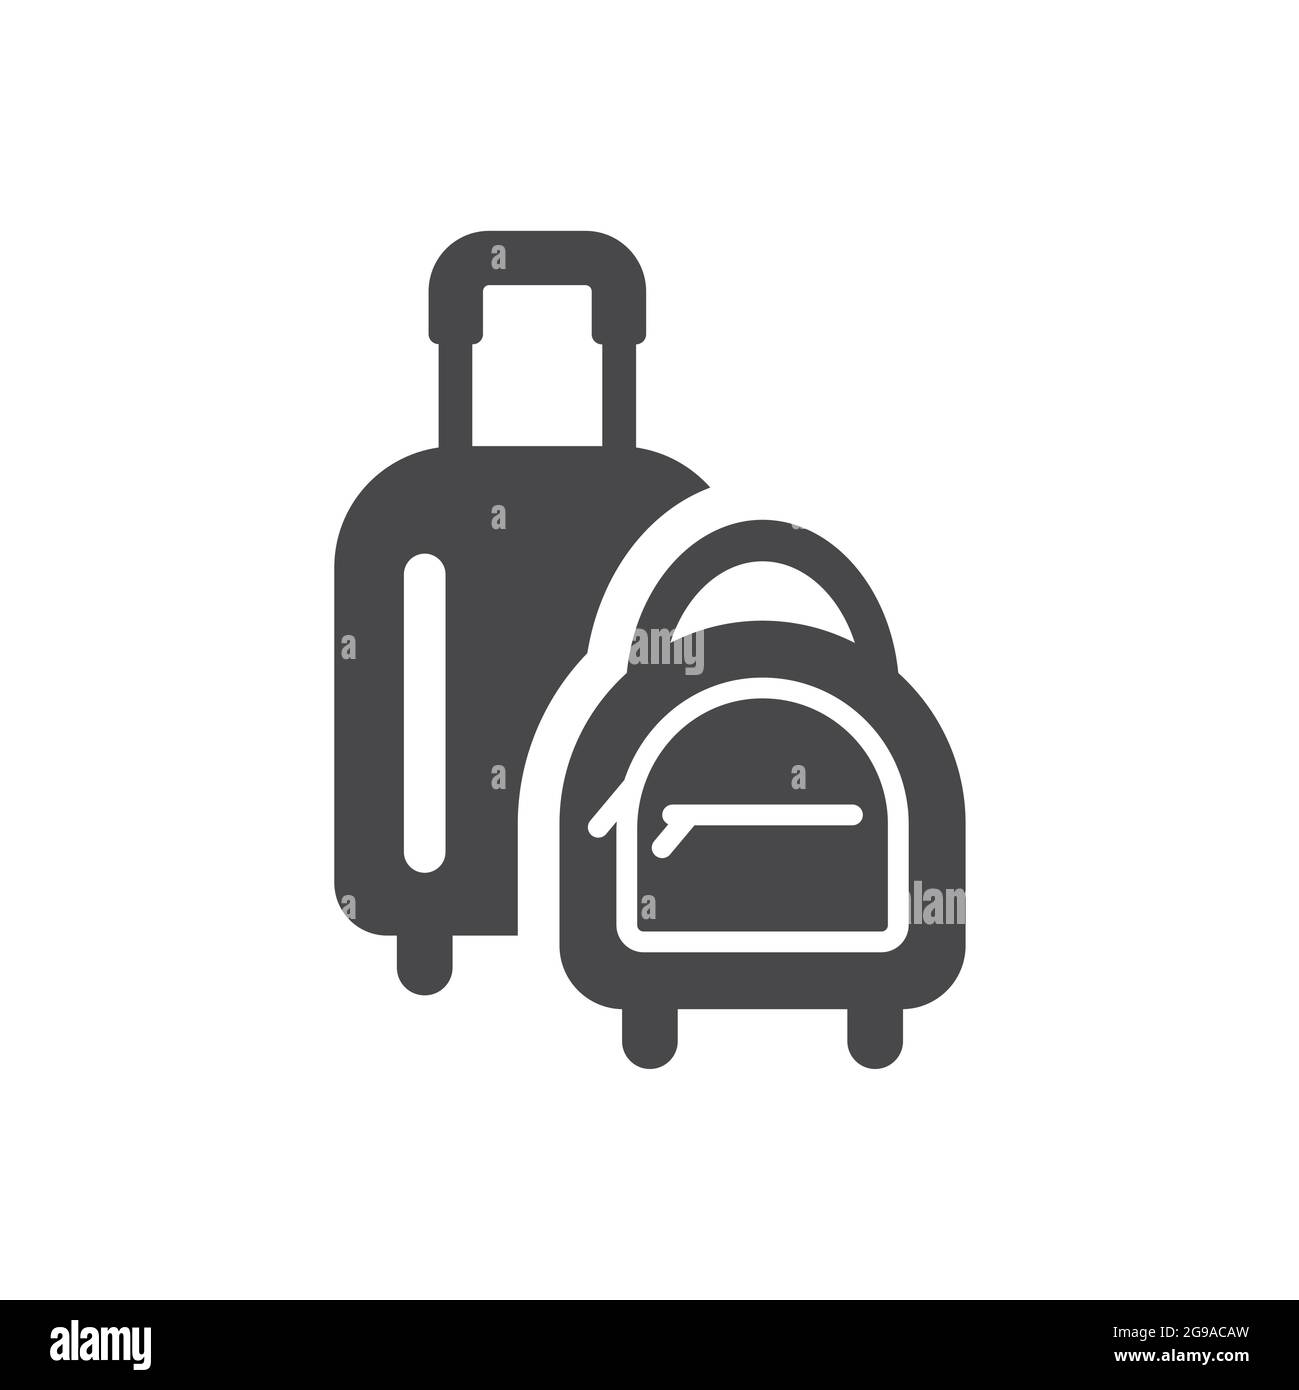 Icona vettoriale nera del bagaglio e della borsa. Simbolo bagaglio, valigia. Illustrazione Vettoriale